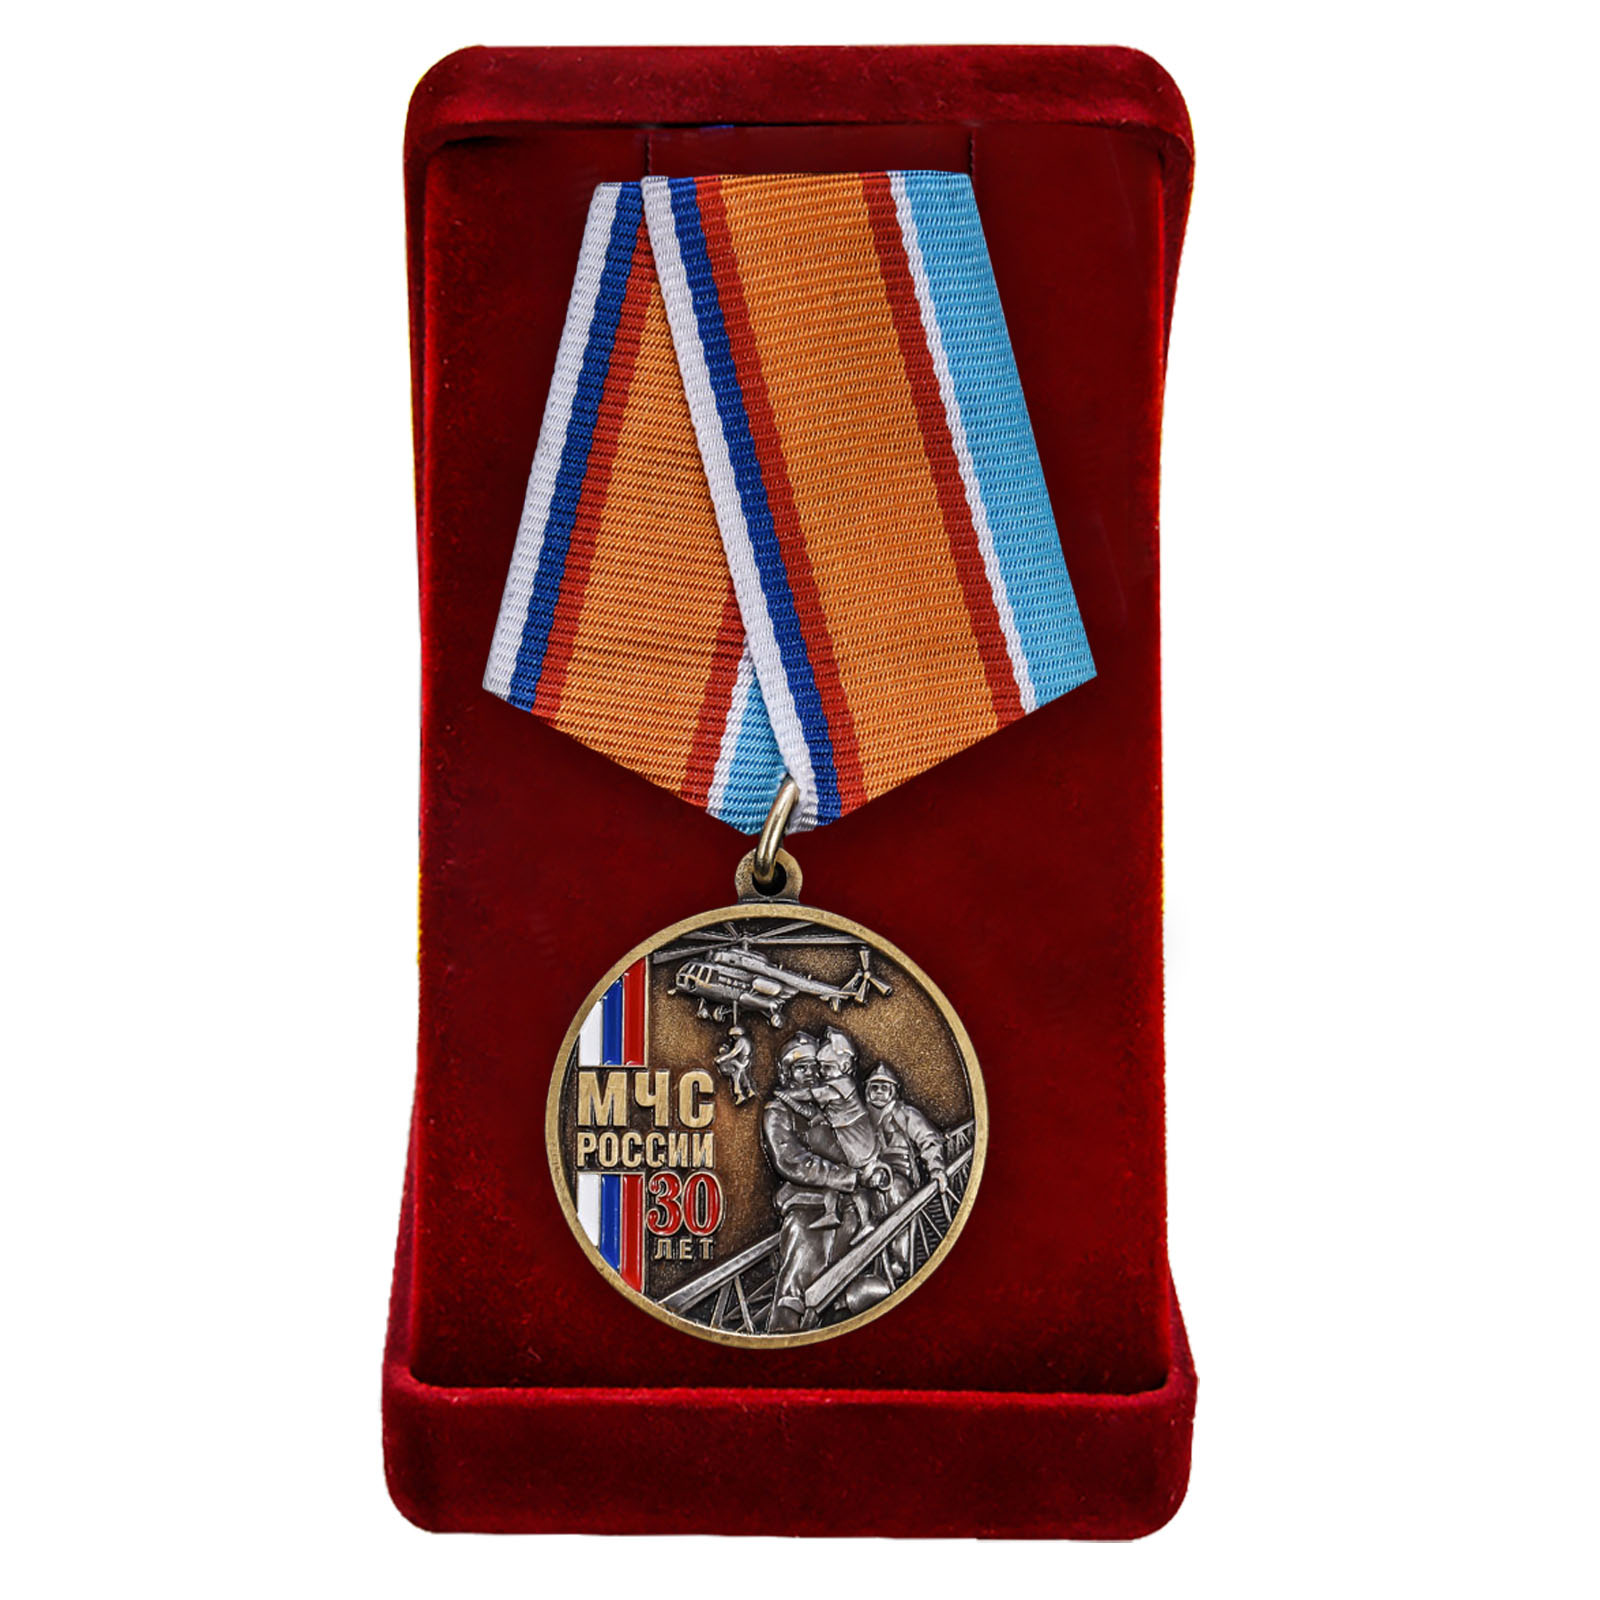 Купить медаль 30 лет МЧС России онлайн в подарок